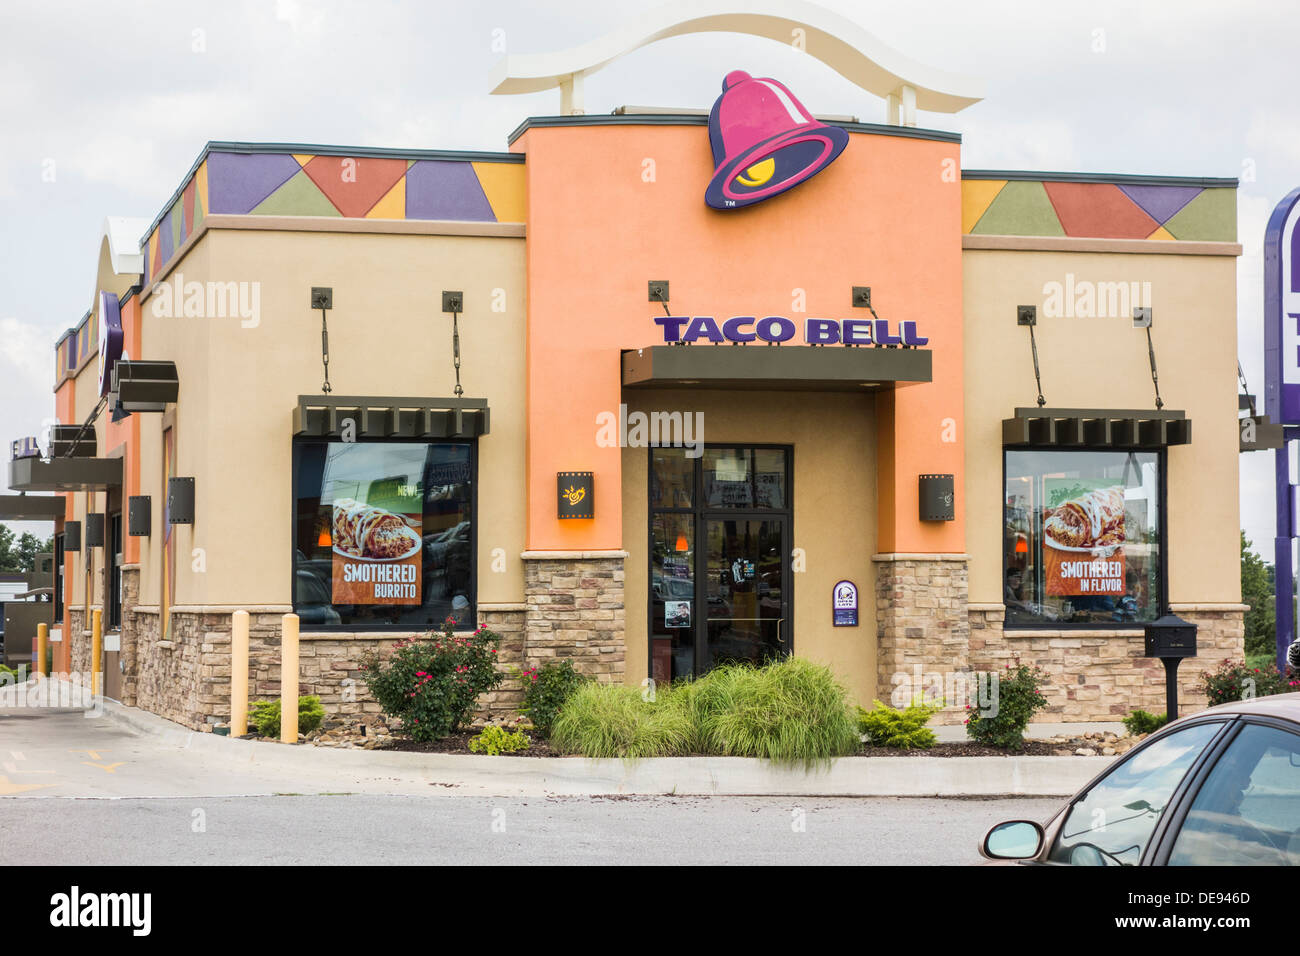 L'extérieur de Taco Bell, une chaîne de restaurant, spécialisé dans la restauration rapide mexicaine. Oklahoma City, Oklahoma, USA. Banque D'Images